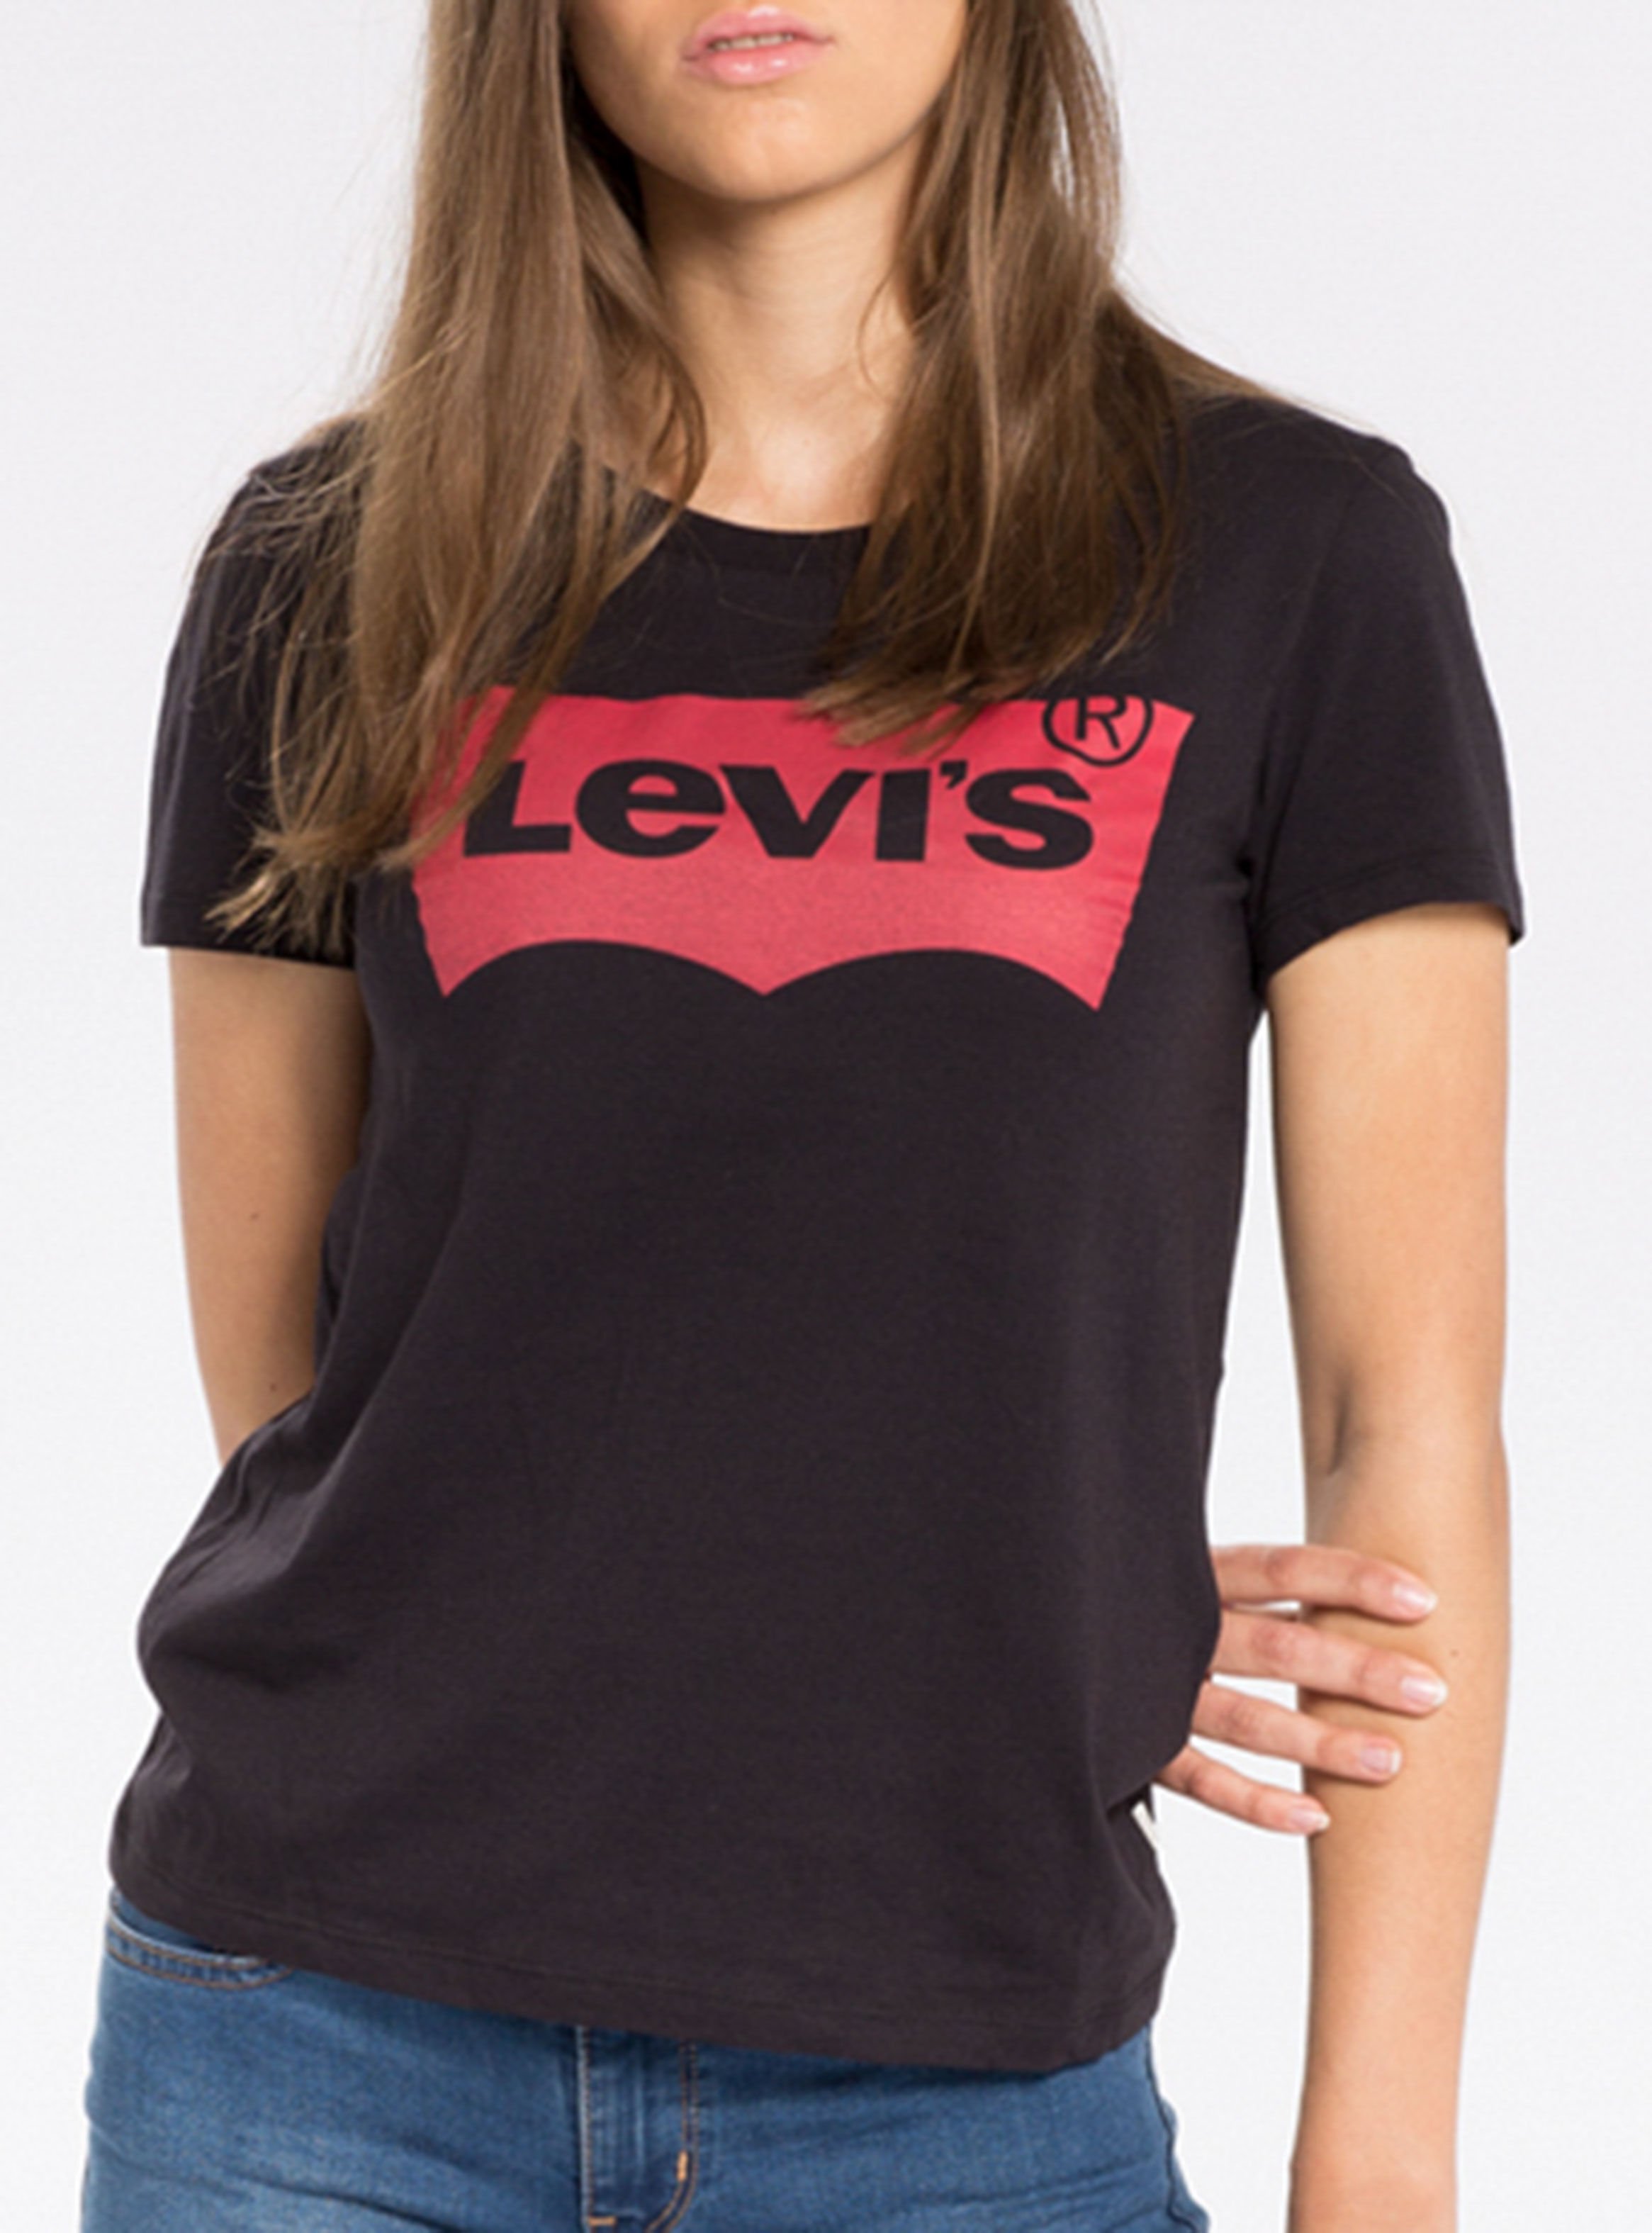 Купить футболку levis. Майка левайс женская. Левайс черная футболка женская. Базовая футболка левайс. Levis женская черная футболка Levis.